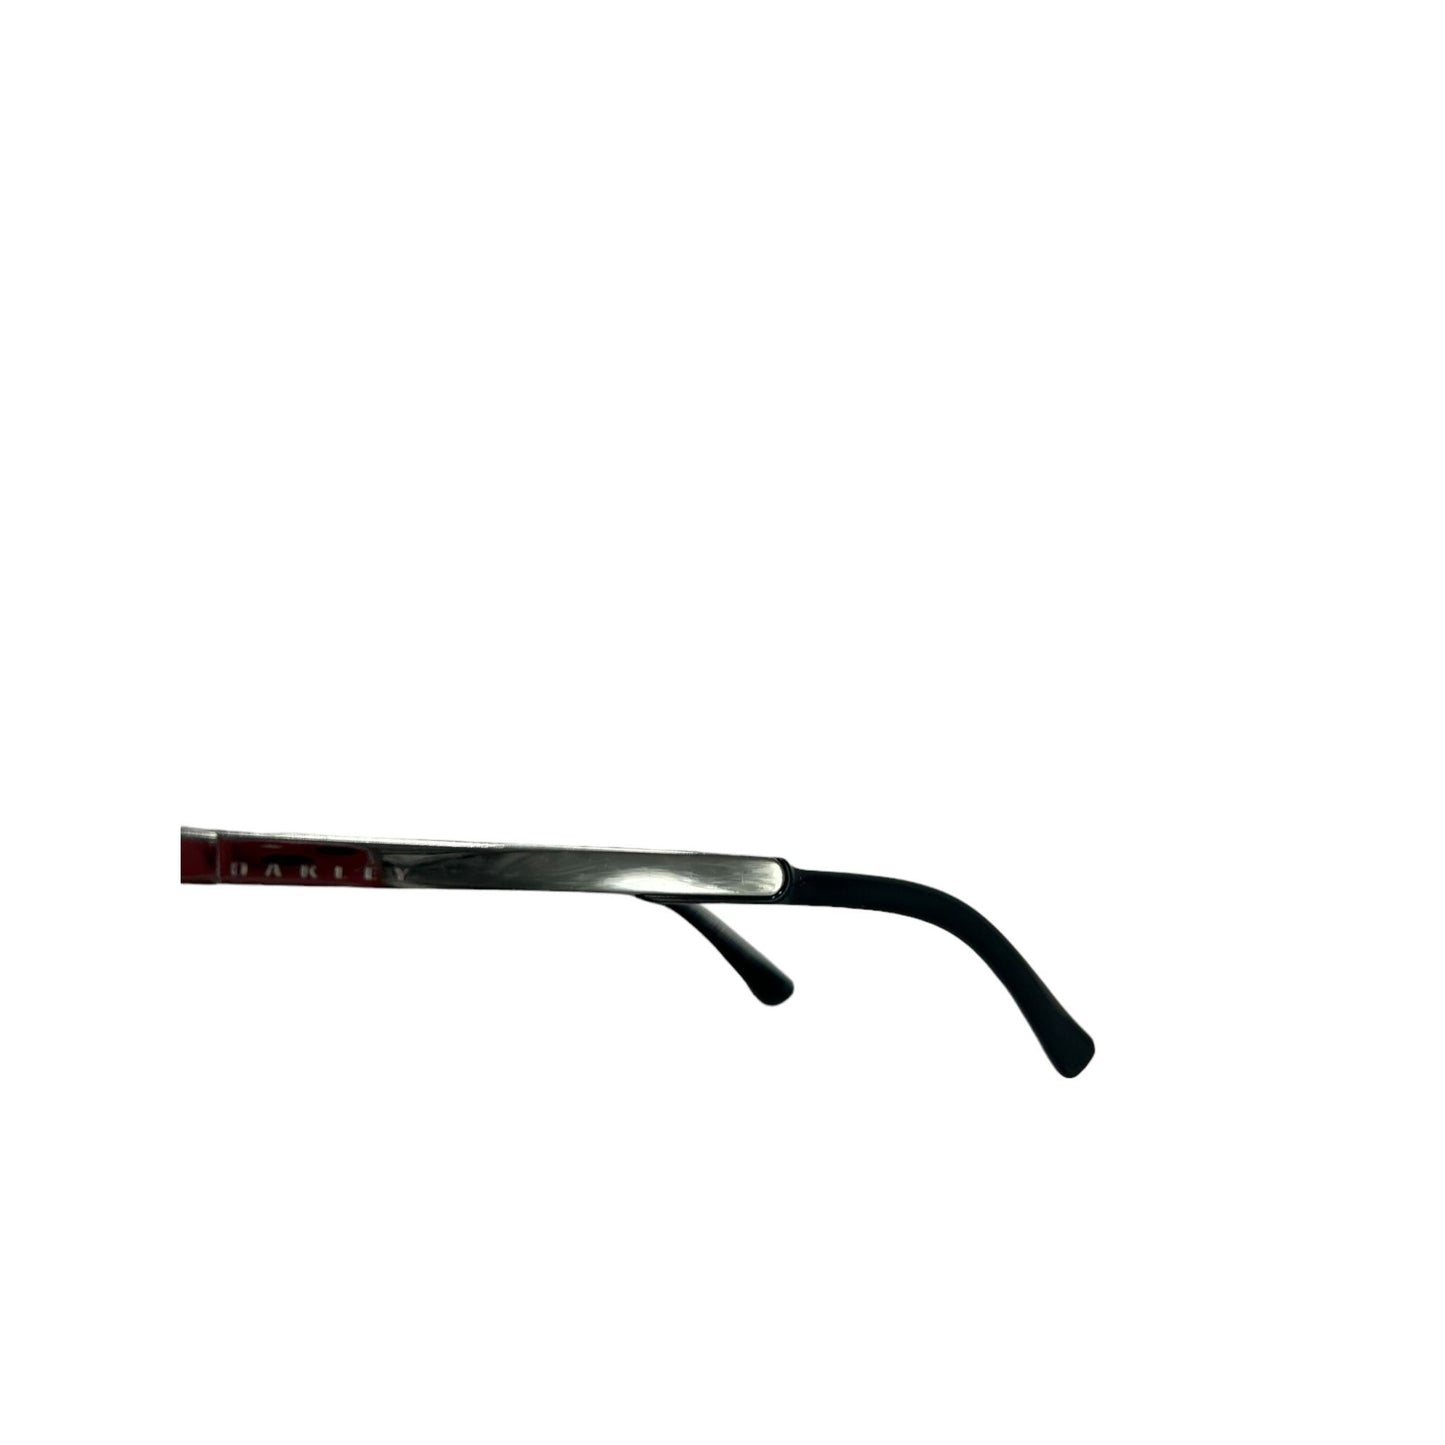 Oakley Sideswept Women's Square Sunglasses OO94450251 Black Cat Eye Frame 100%UV